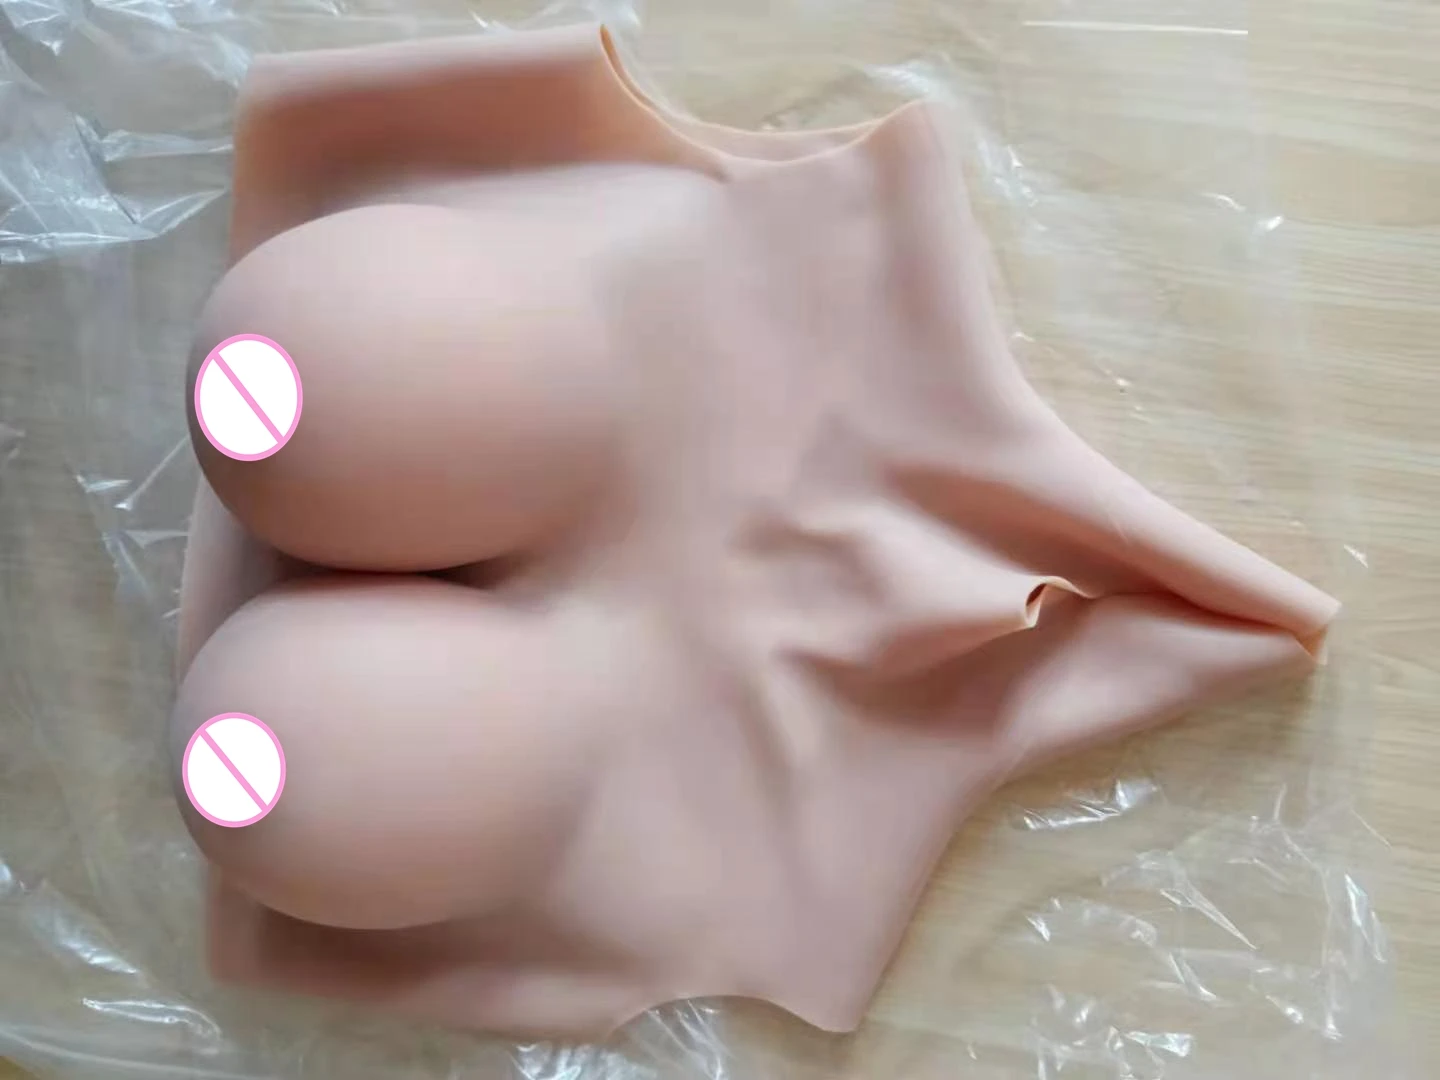 2g-atualizar-bcd-gola-alta-pescoco-falso-artificial-mama-formas-de-mama-de-silicone-realista-travestis-transgenero-travesti-rainha